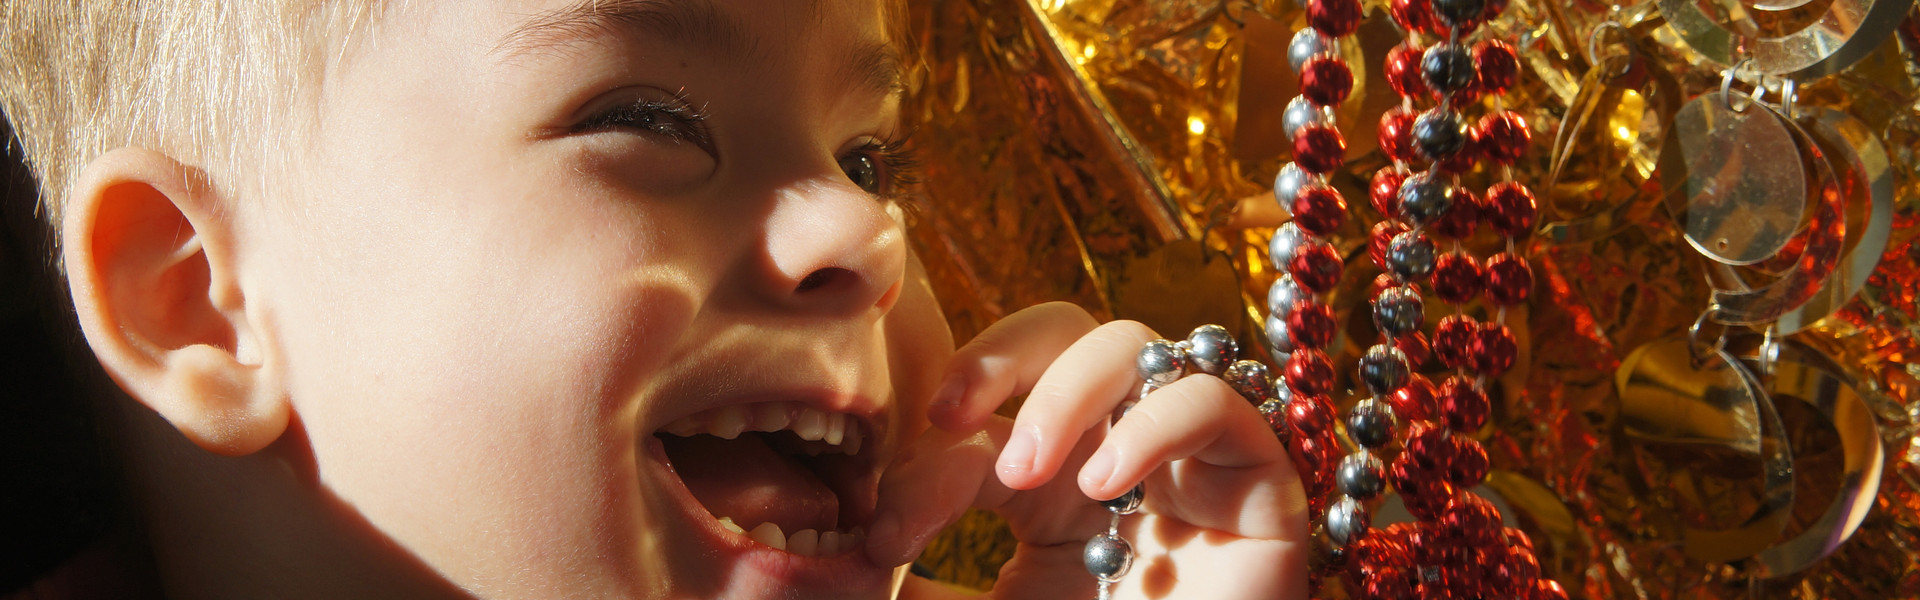 Primo piano di Edoardo, bambino di 3 anni ospite del Centro di Osimo, che ride giocando con delle catenelle rosse e oro durante una seduta di stimolazione sensoriale